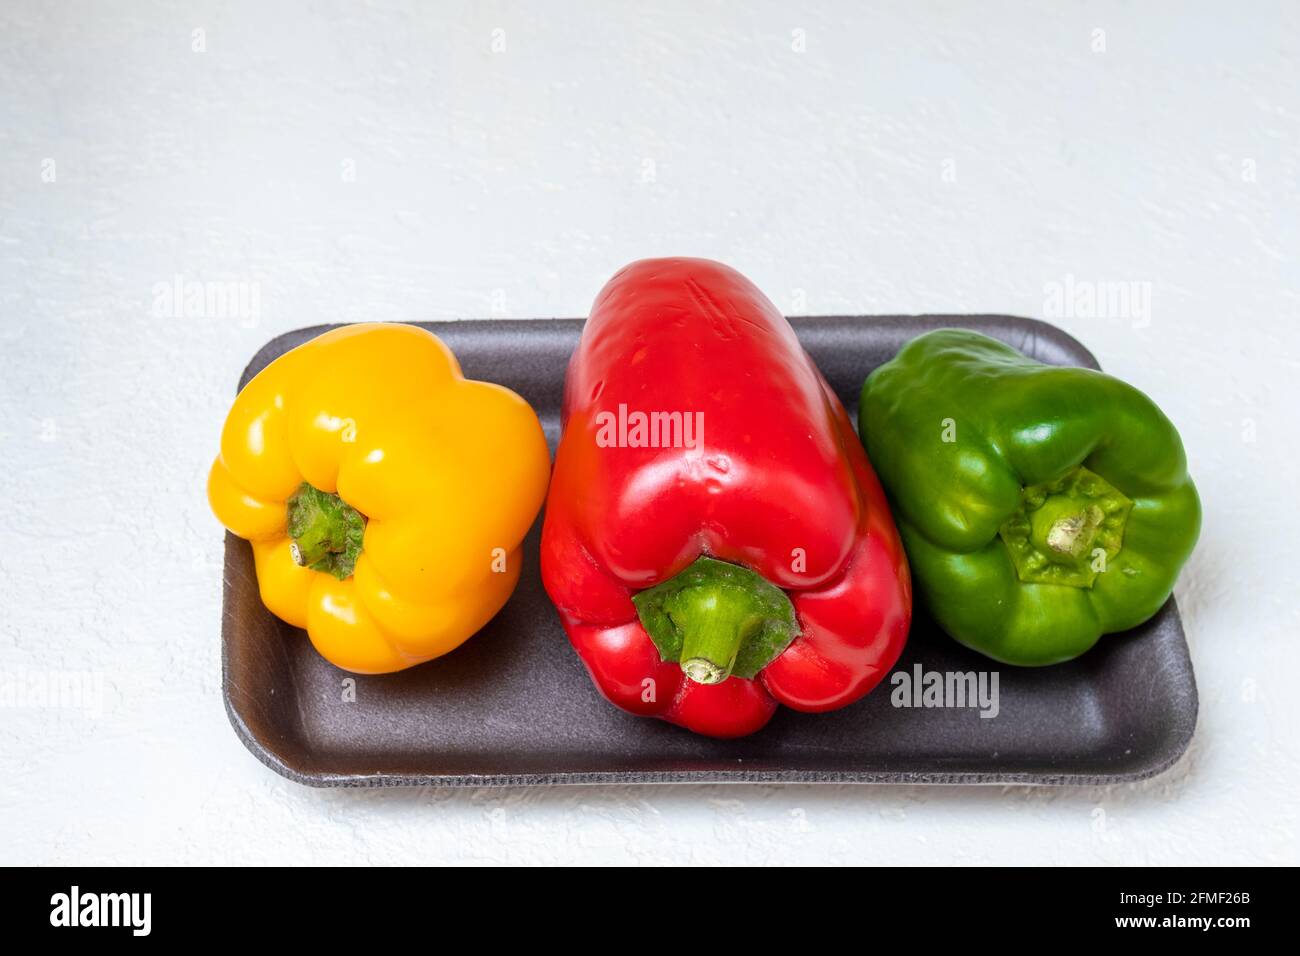 Tre peperoni dolci bulgari rossi gialli e verdi in un contenitore su sfondo chiaro, primo piano. Il concetto di cibo sano, dieta, peso co Foto Stock